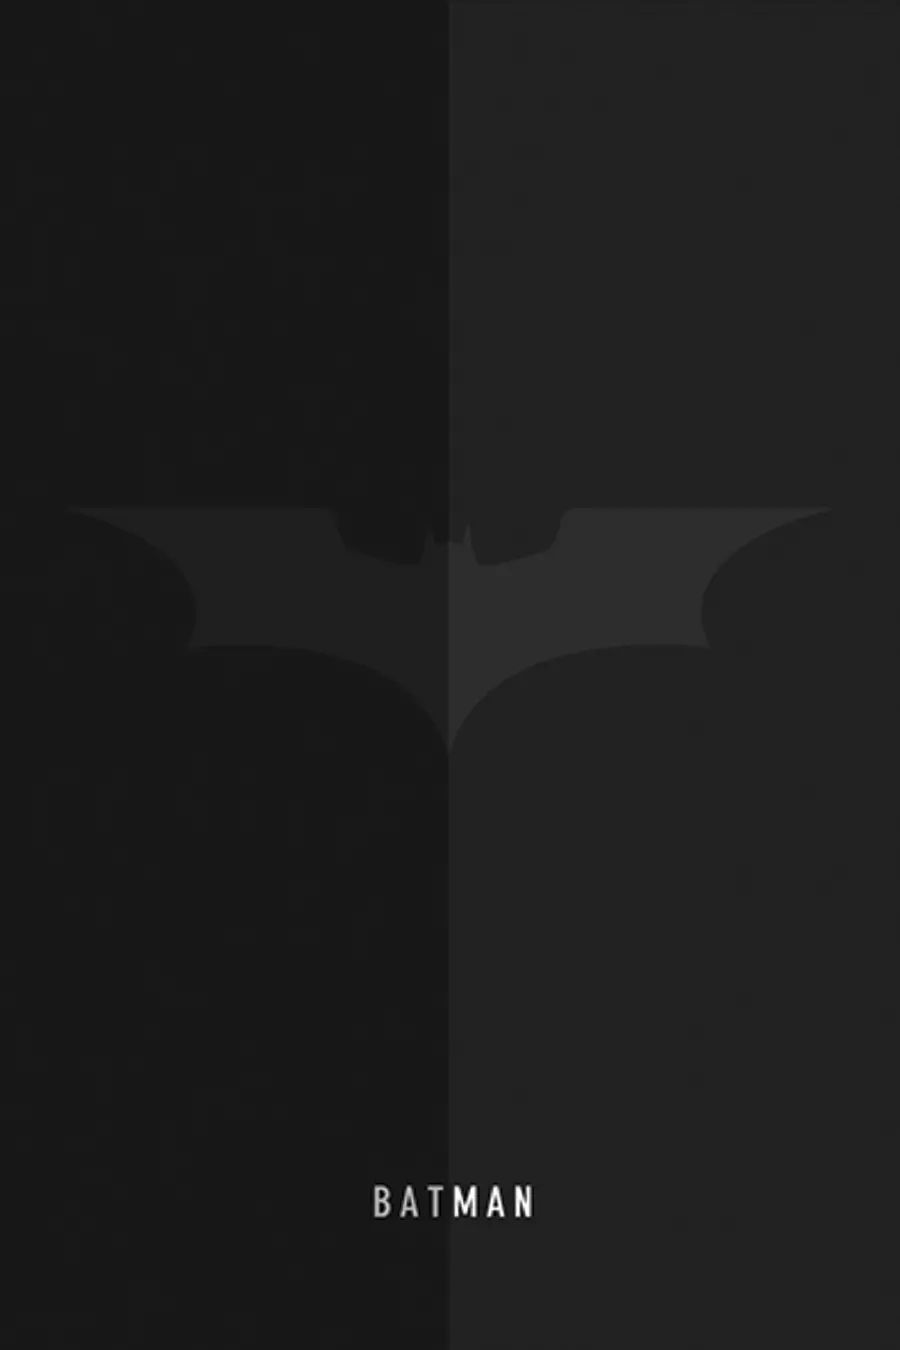 لوگو مینیمال و سیاه سفید ابرقهرمان محبوب به نام بتمن BATMAN